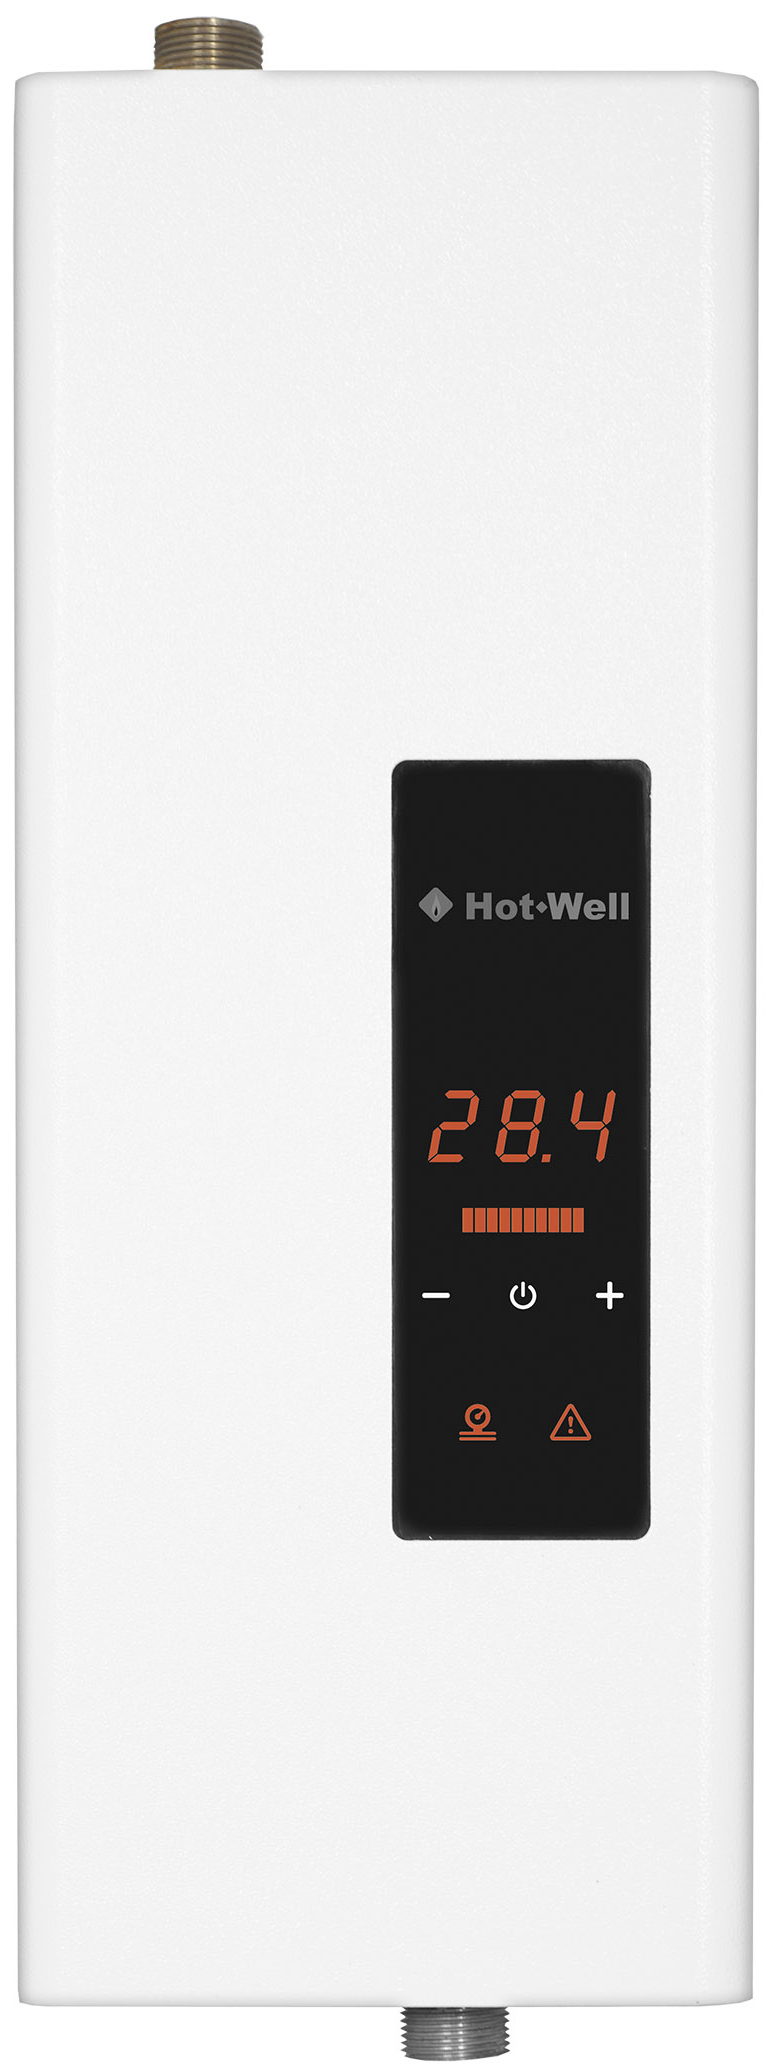 Електричний котел Hot-Well Elektra LUX S 9/380 ціна 0.00 грн - фотографія 2